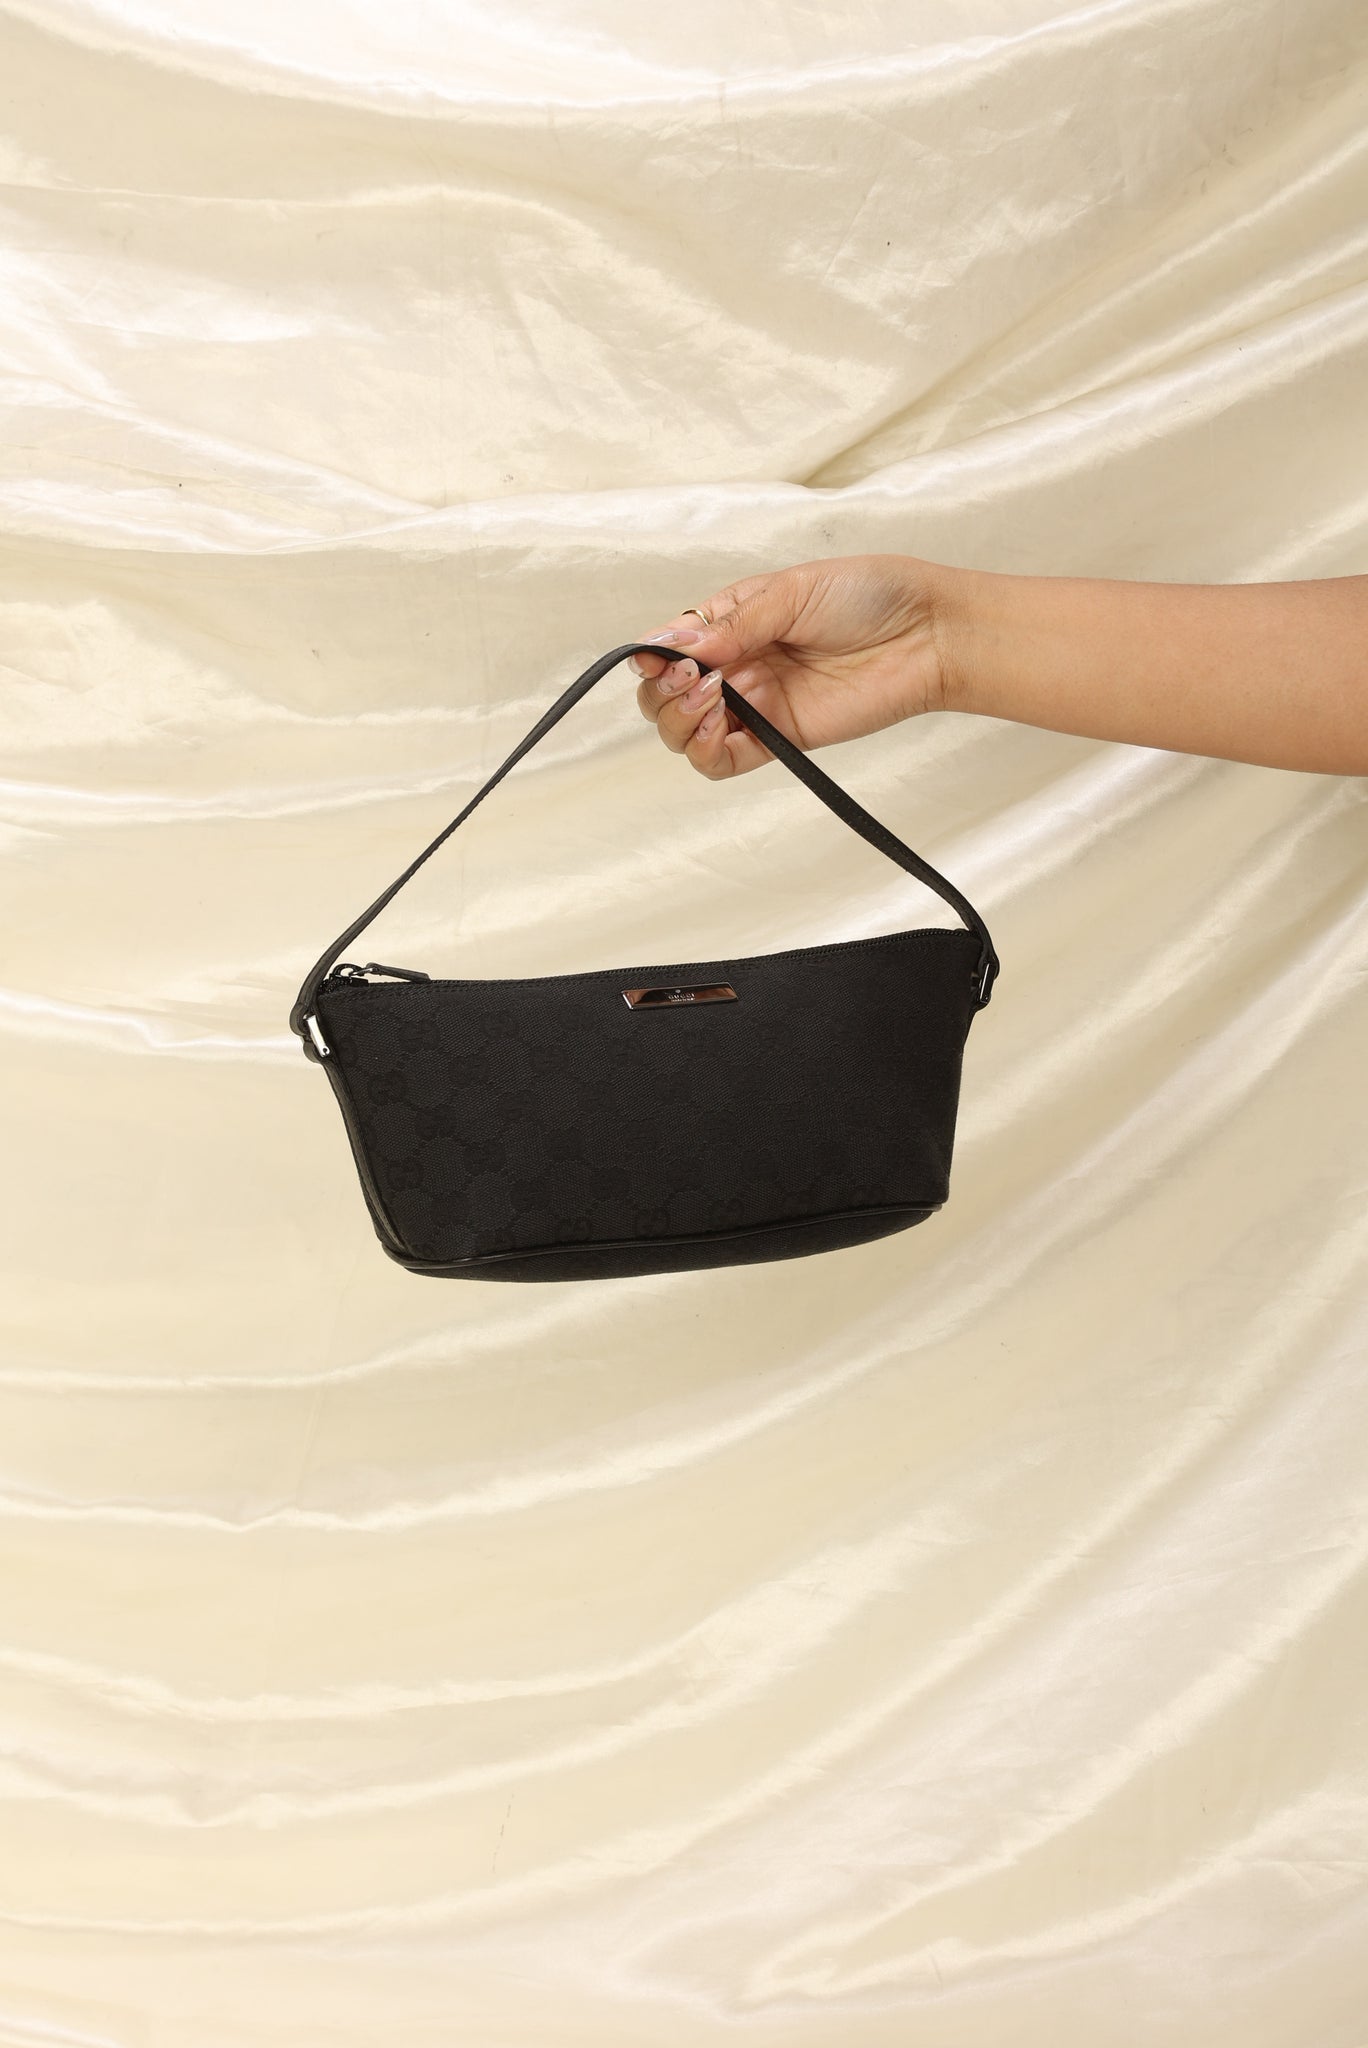 Vintage Gucci Boat Pochette Handbag purse Hand Shoulder Bag Canvas